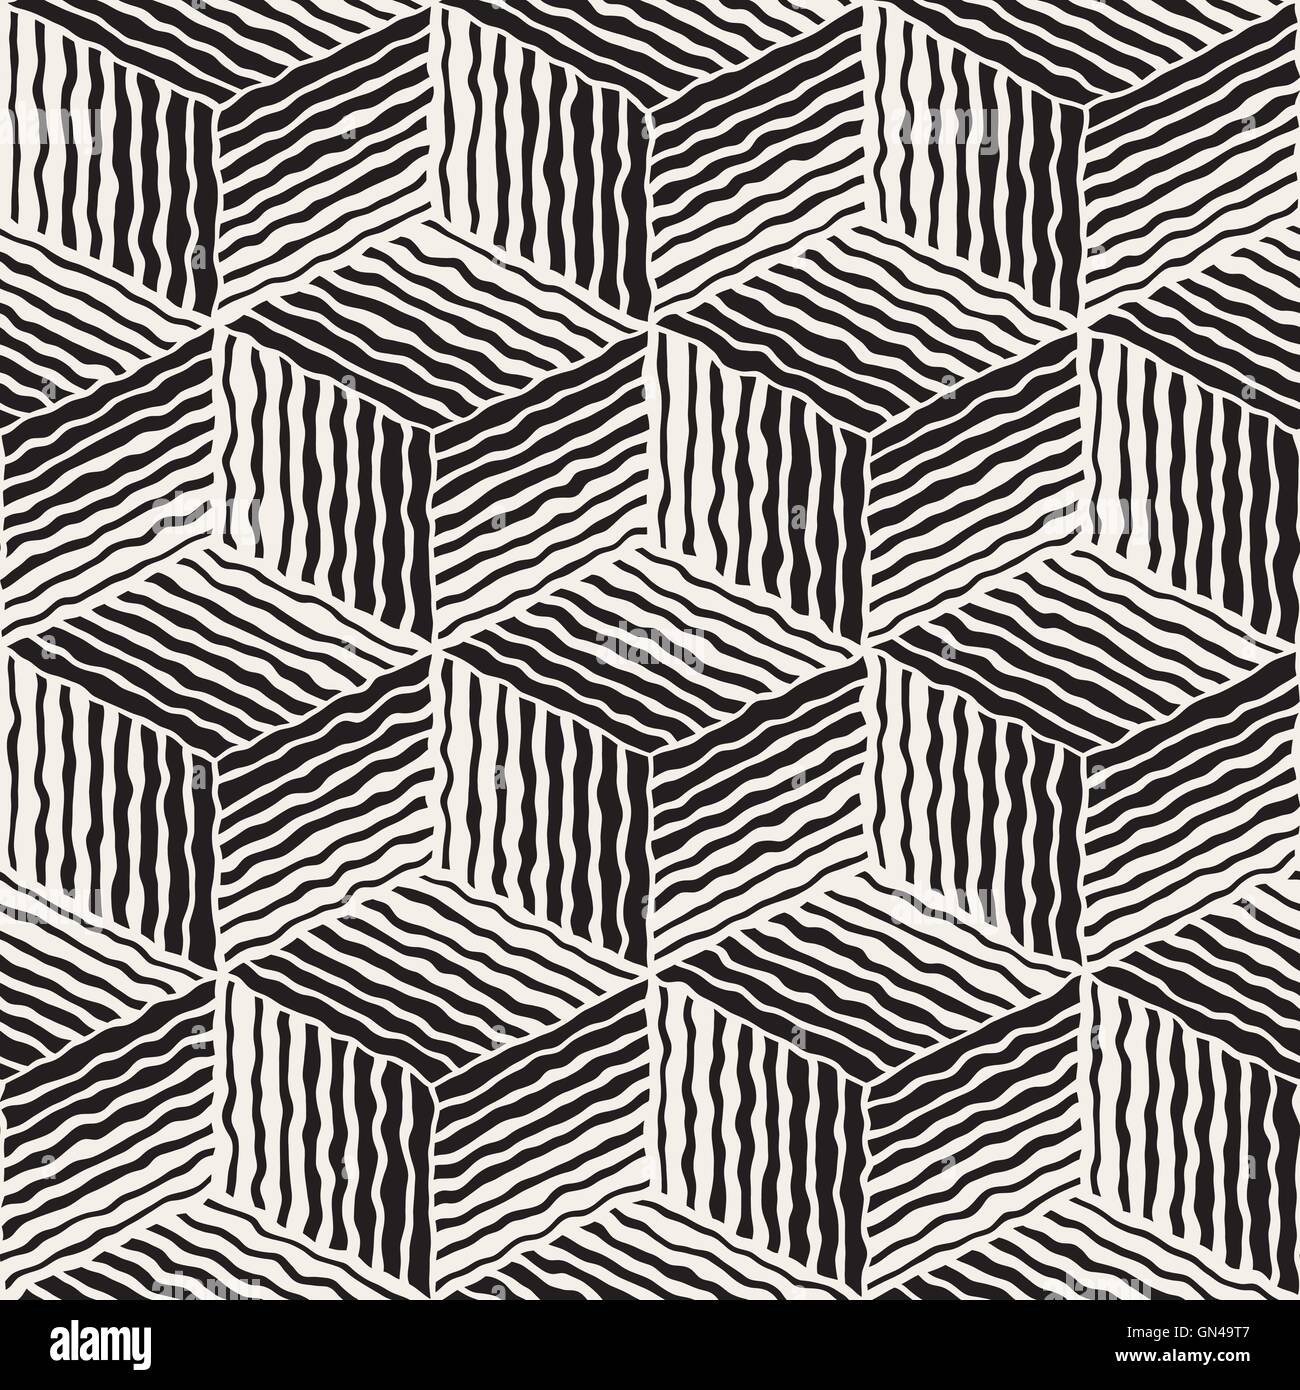 Seamless Vector noir et blanc peint à la main Modèle cube rayures géométriques en ligne Illustration de Vecteur